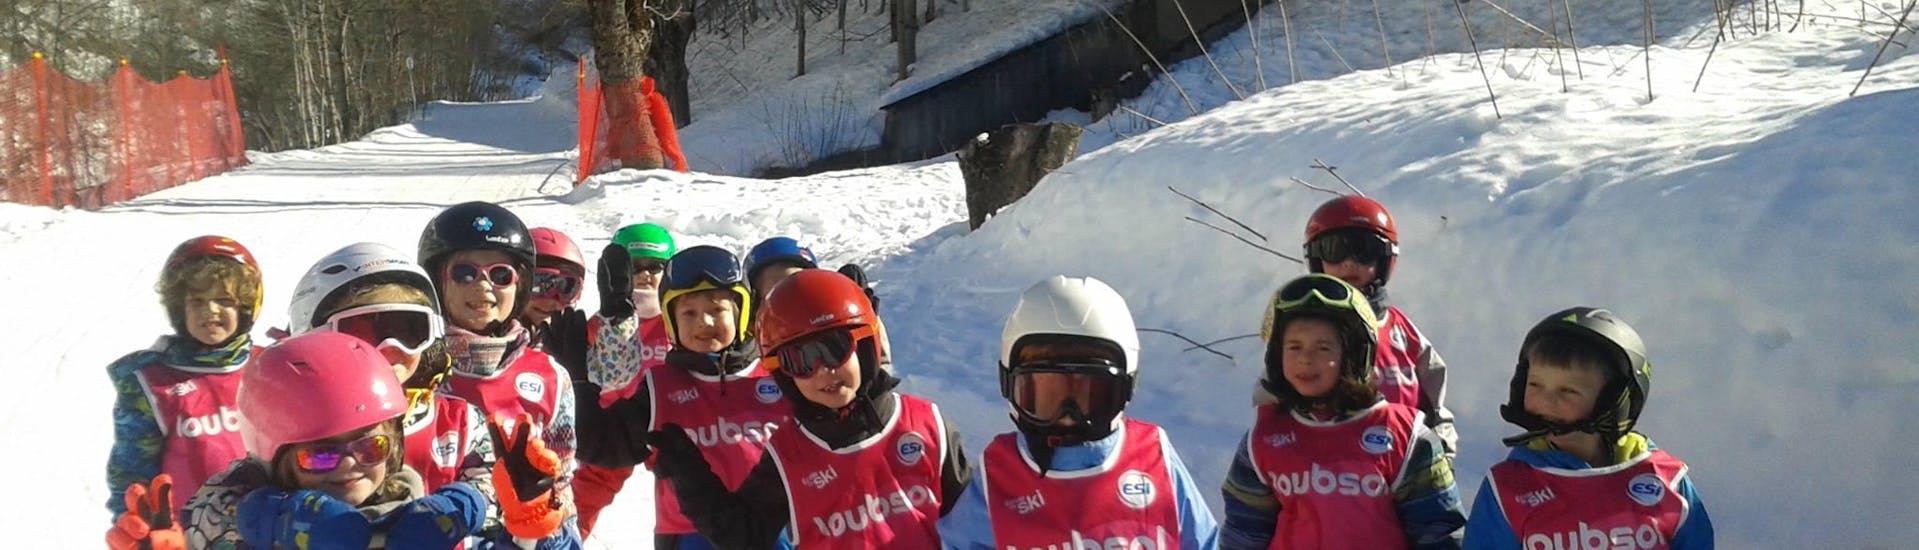 Des enfants se tiennent au milieu de la piste pendant leur Cours de ski pour Enfants (3-11 ans) - Vacances - Après-midi avec l'école de ski ESI Ecoloski Barèges.